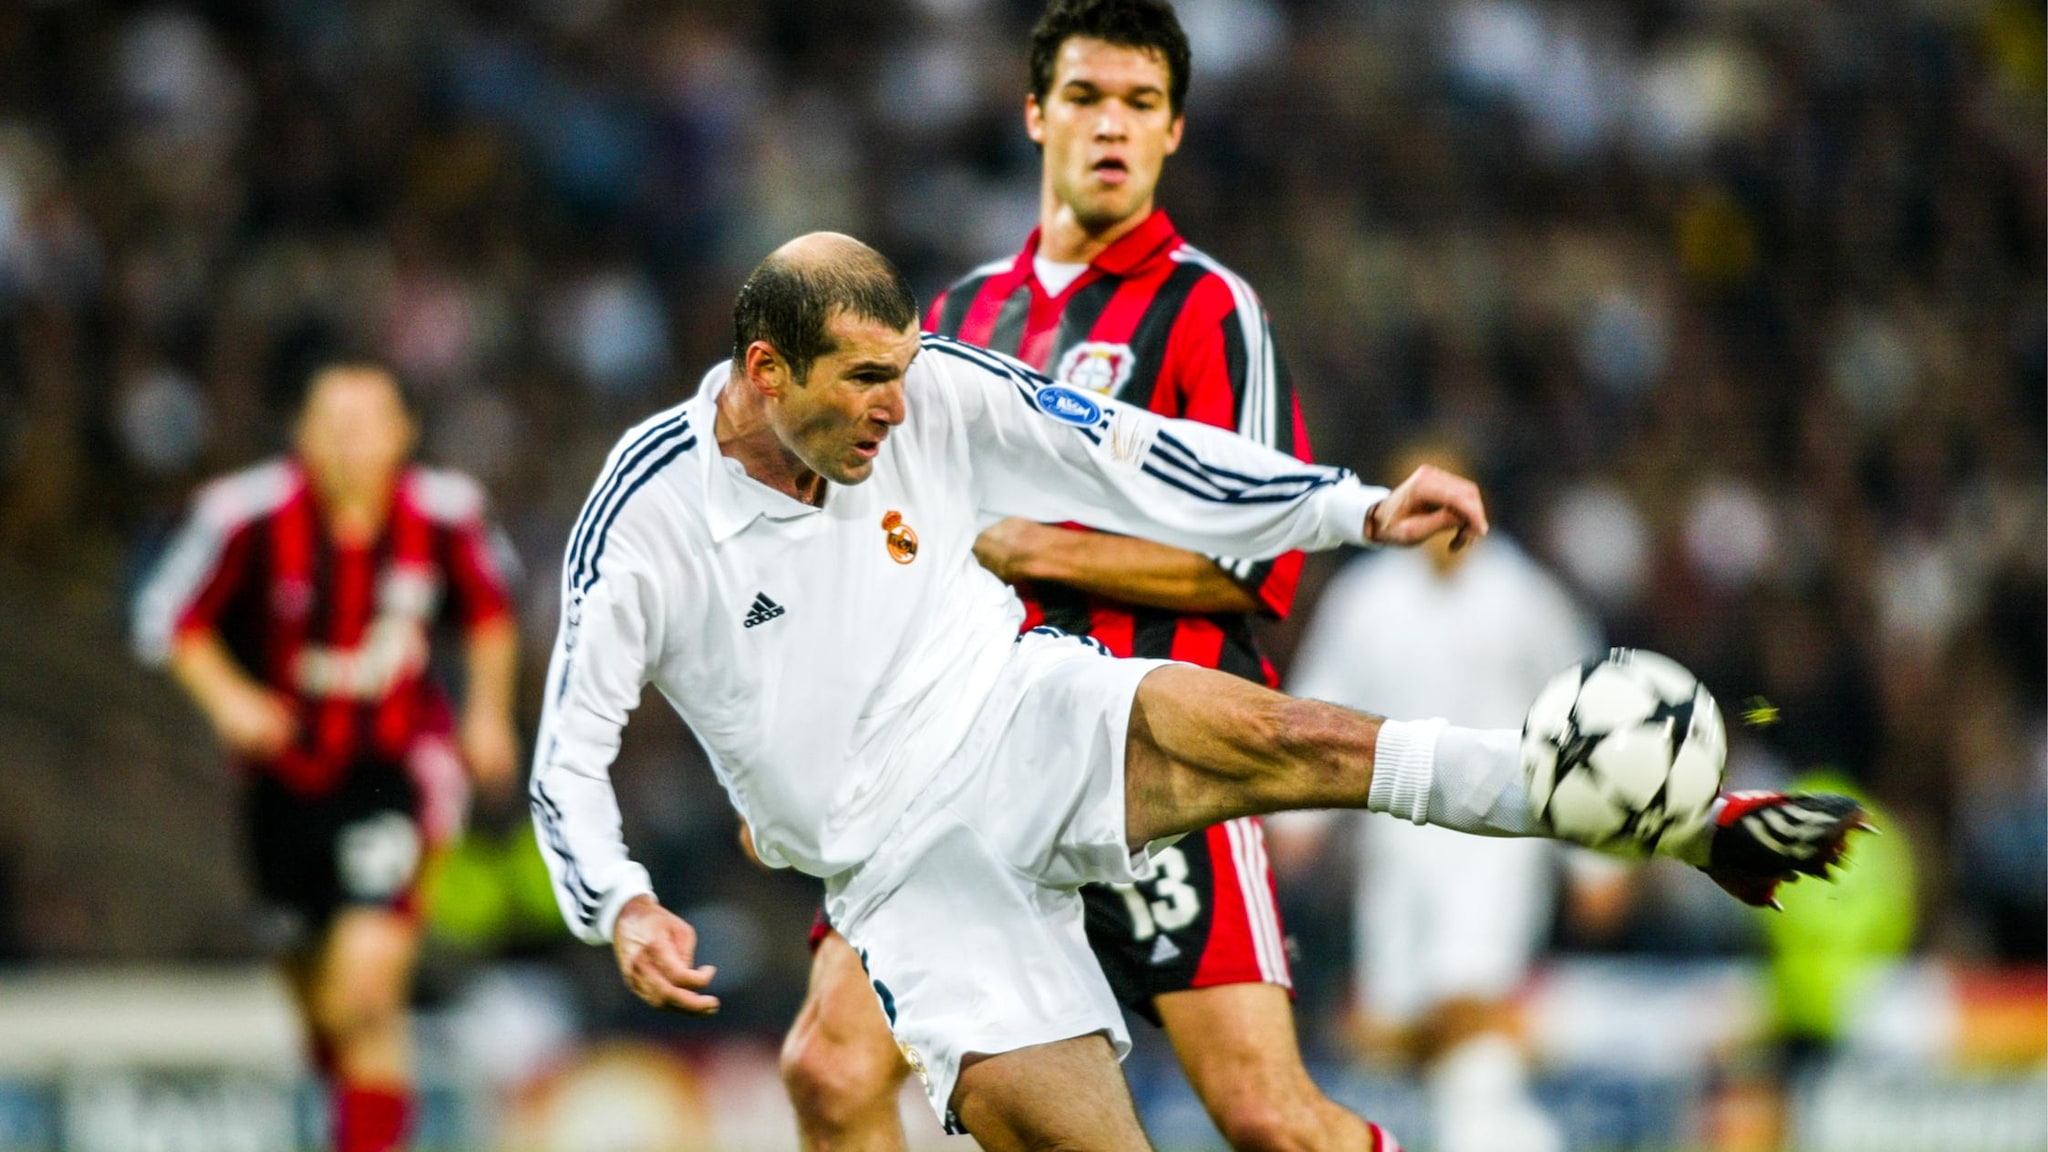 Roberto Carlos' memories of Zidane's 2002 final volley | UEFA Champions League | UEFA.com